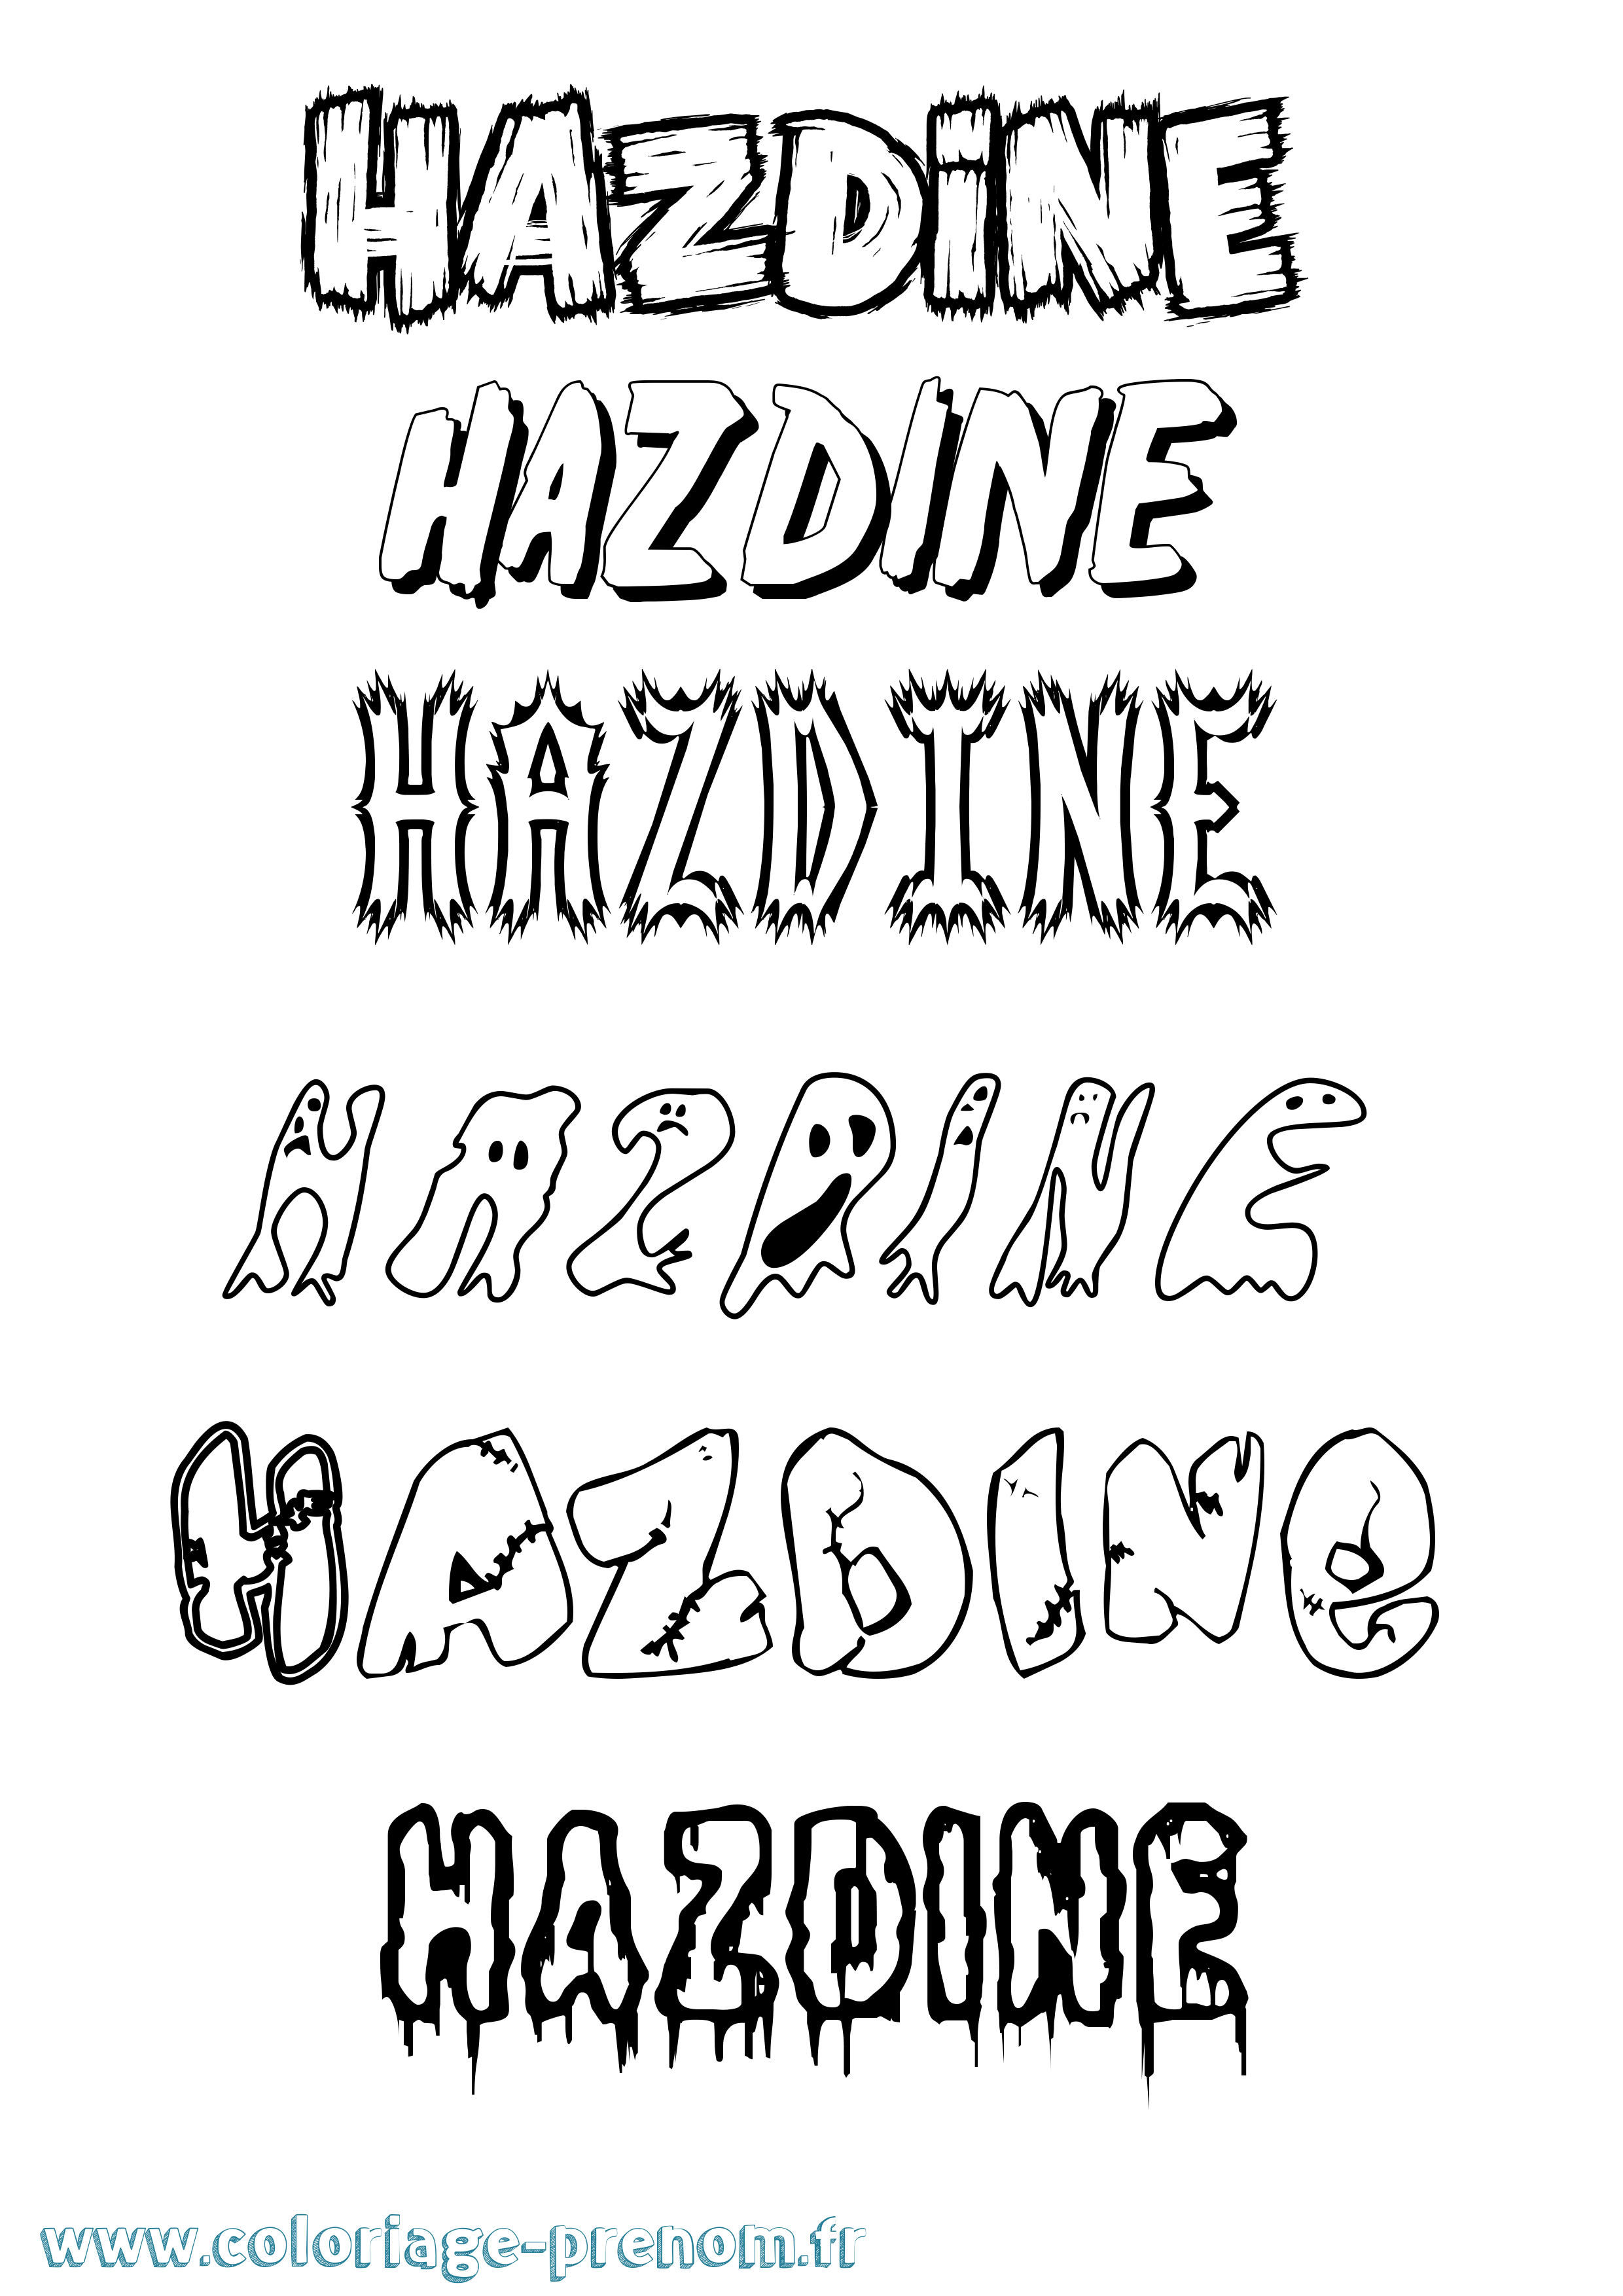 Coloriage prénom Hazdine Frisson